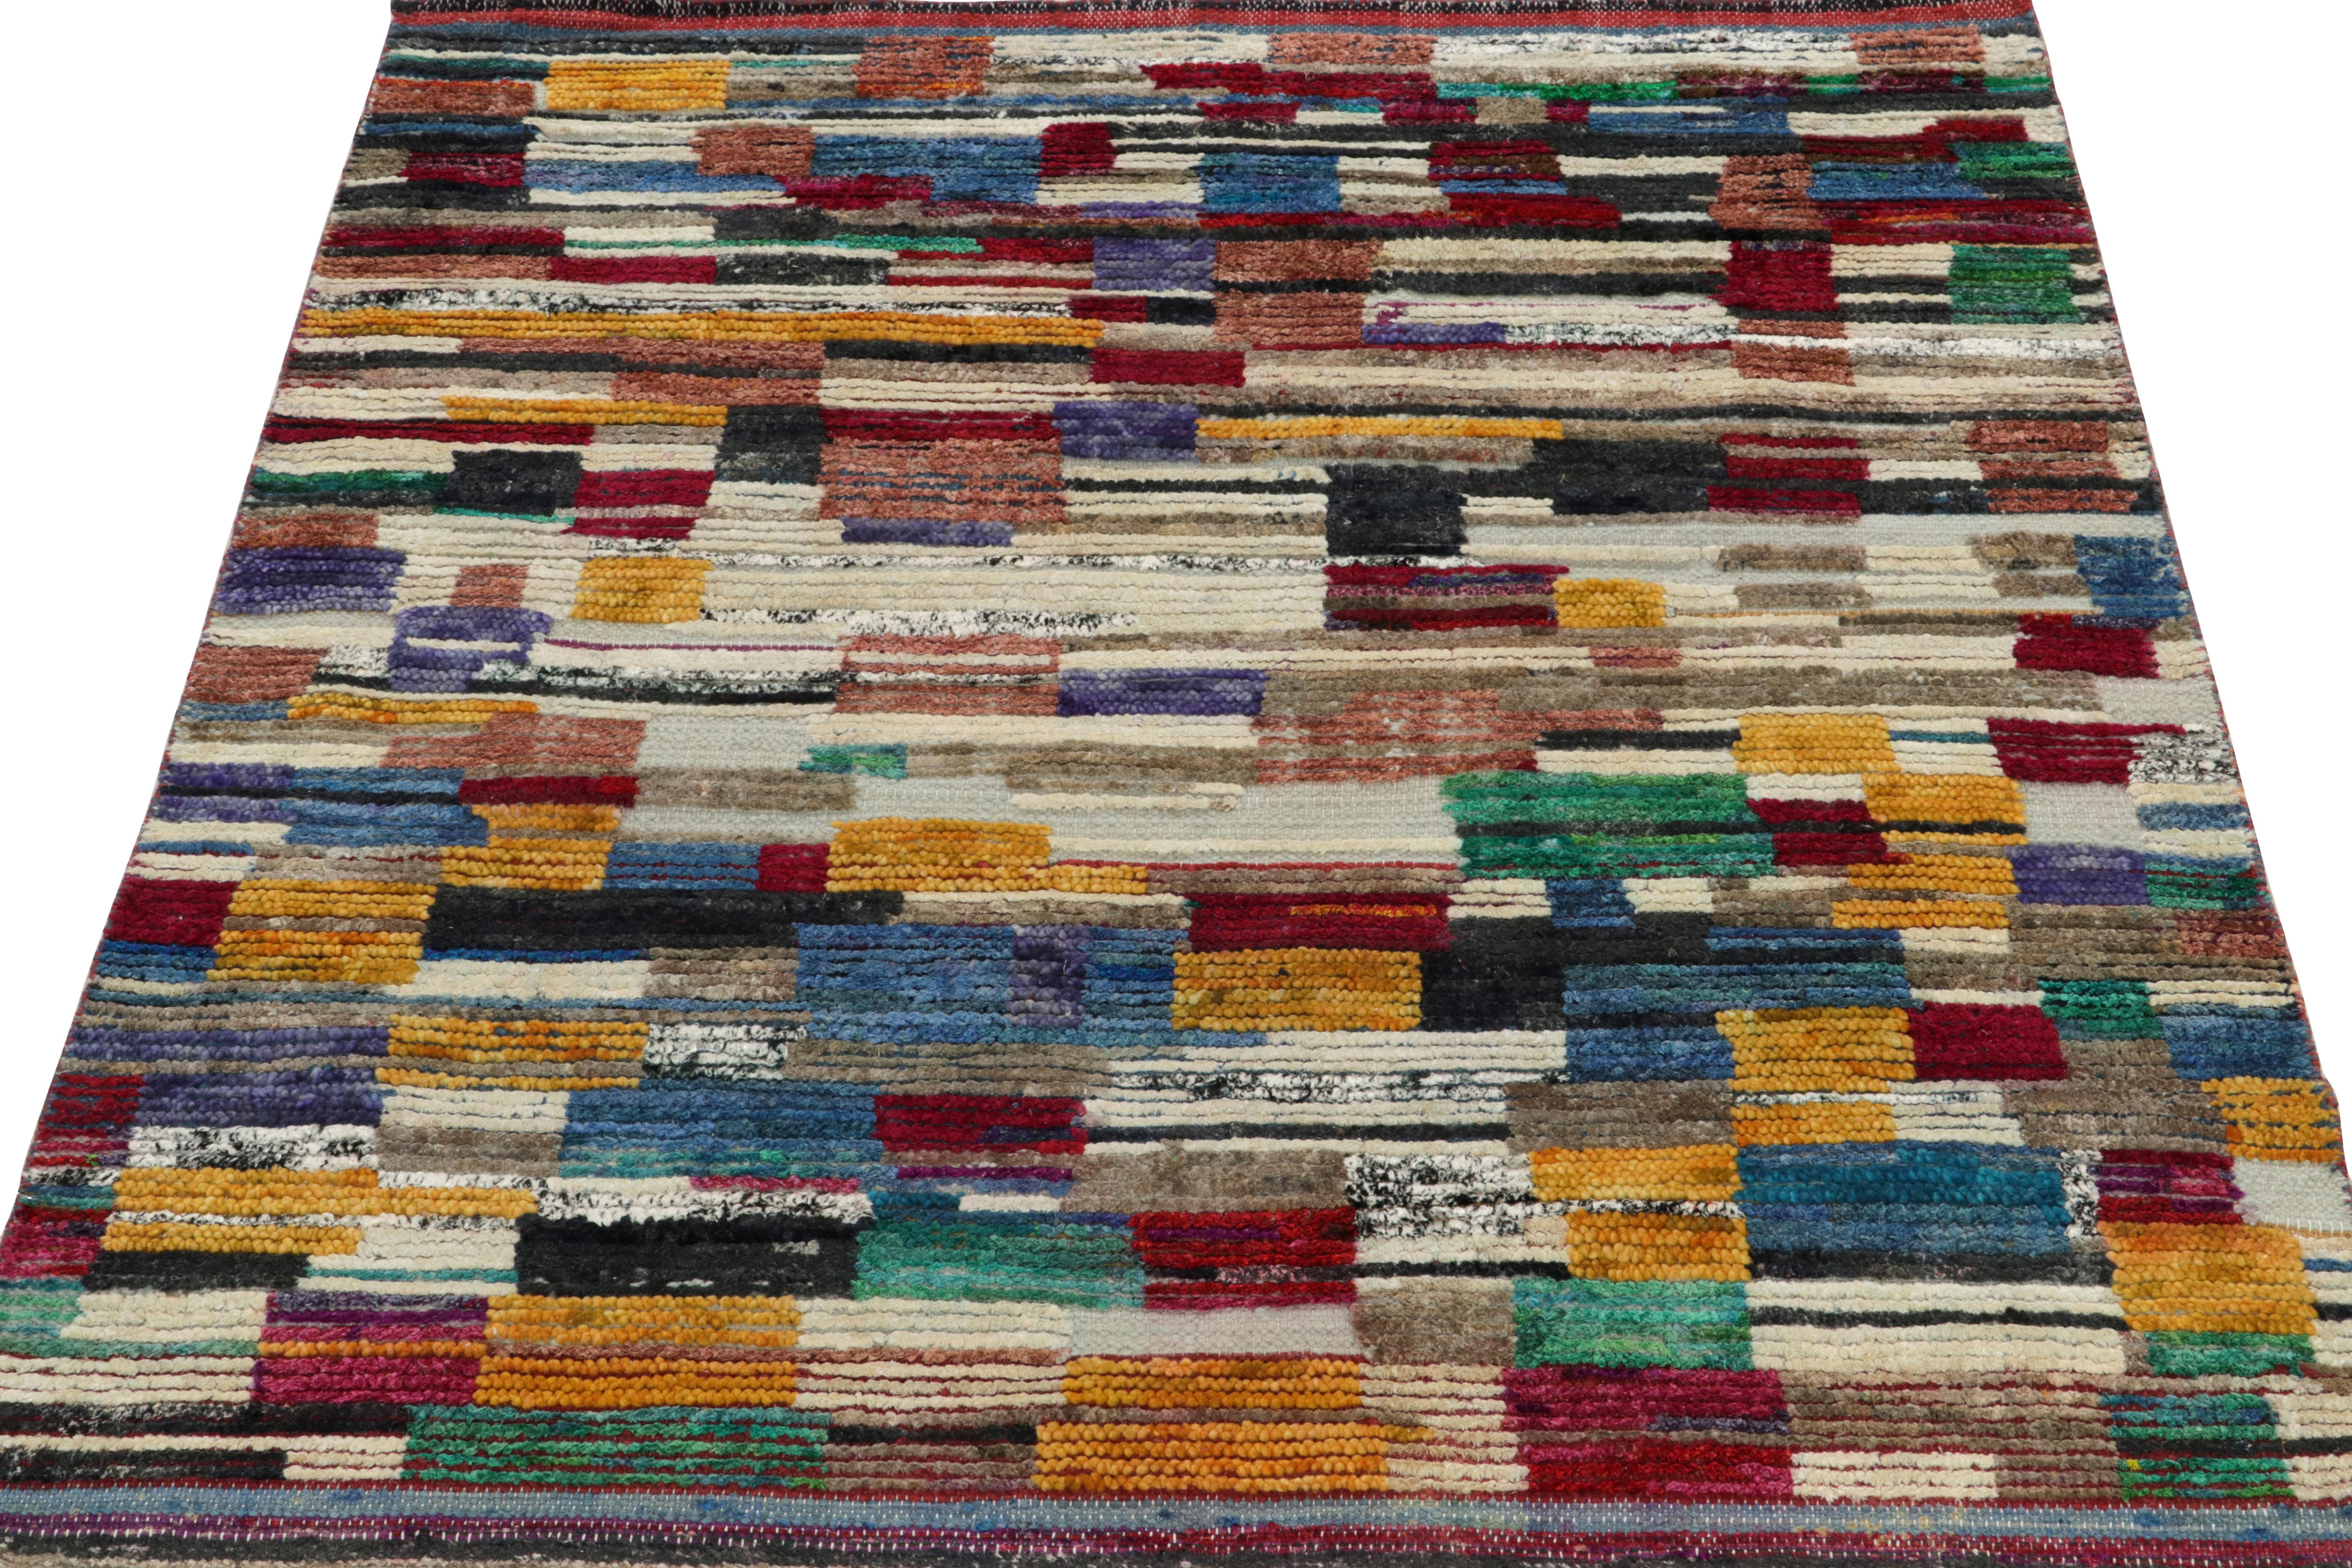 Rug & Kilim rend un hommage inventif au design des tapis marocains, en évoquant un jeu séduisant de nuances panachées d'or, de rouge écarlate, de bleu, de blanc et de vert qui se fondent harmonieusement pour se terminer par une bordure striée